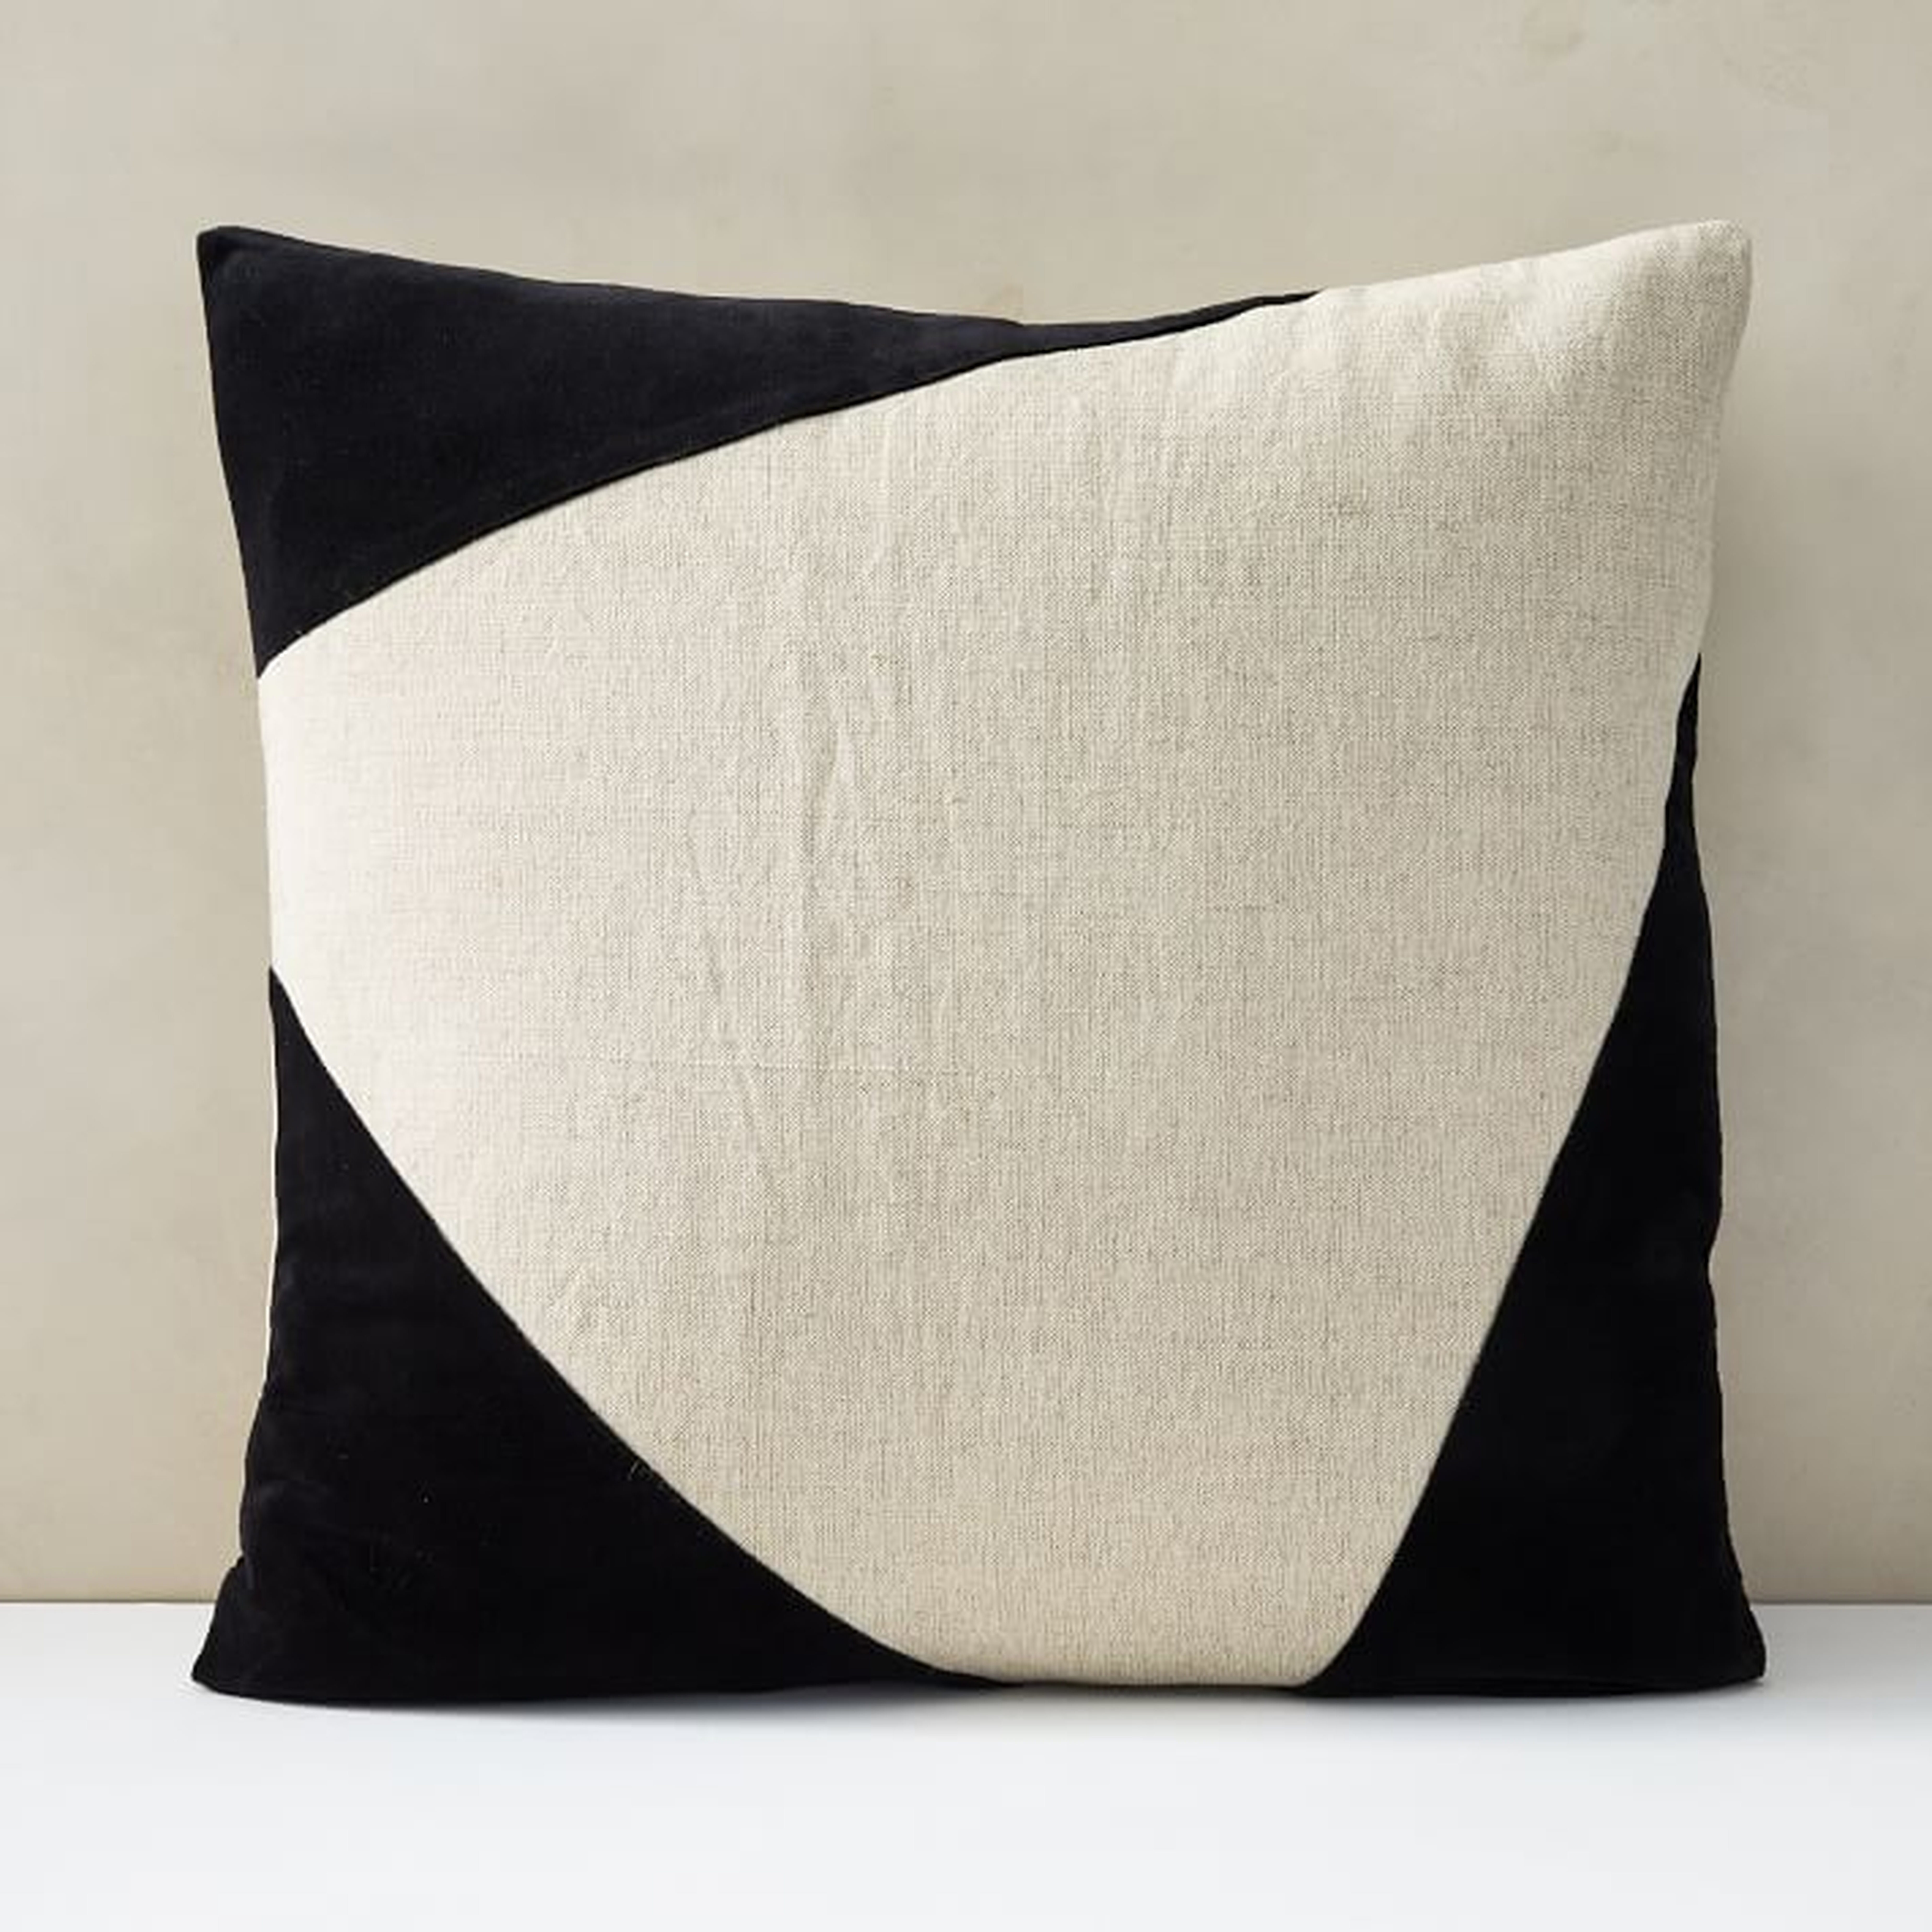 Cotton Linen + Velvet Corners Pillow Cover with Down Alternative Insert, Dark Horseradish, 24"x24" - West Elm